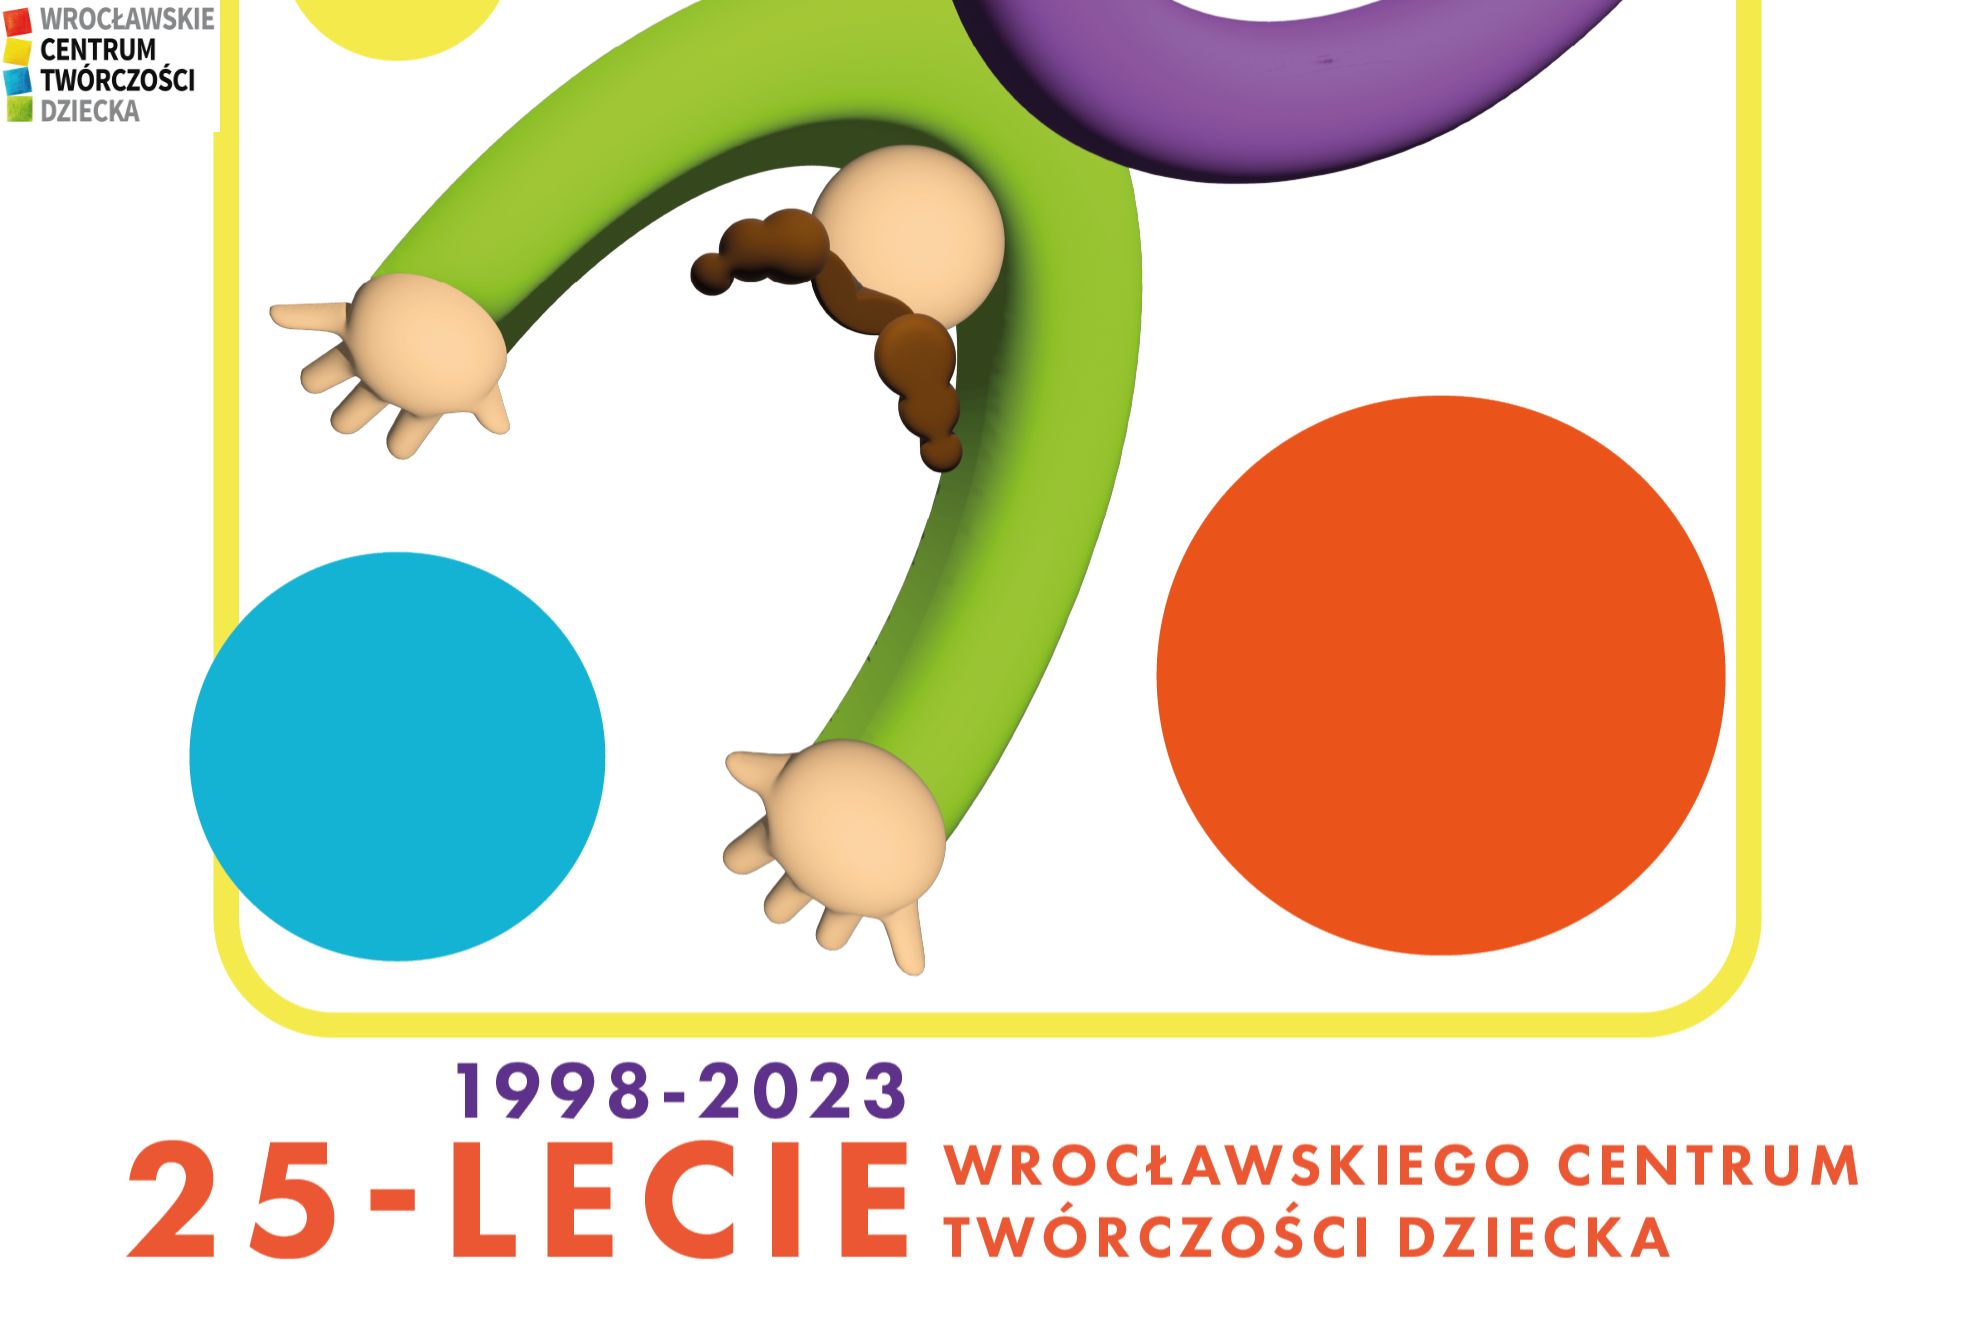 Wrocławskie Centrum Twórczości Dziecka: Od 25 lat rozwijamy społeczną twórczość najmłodszych